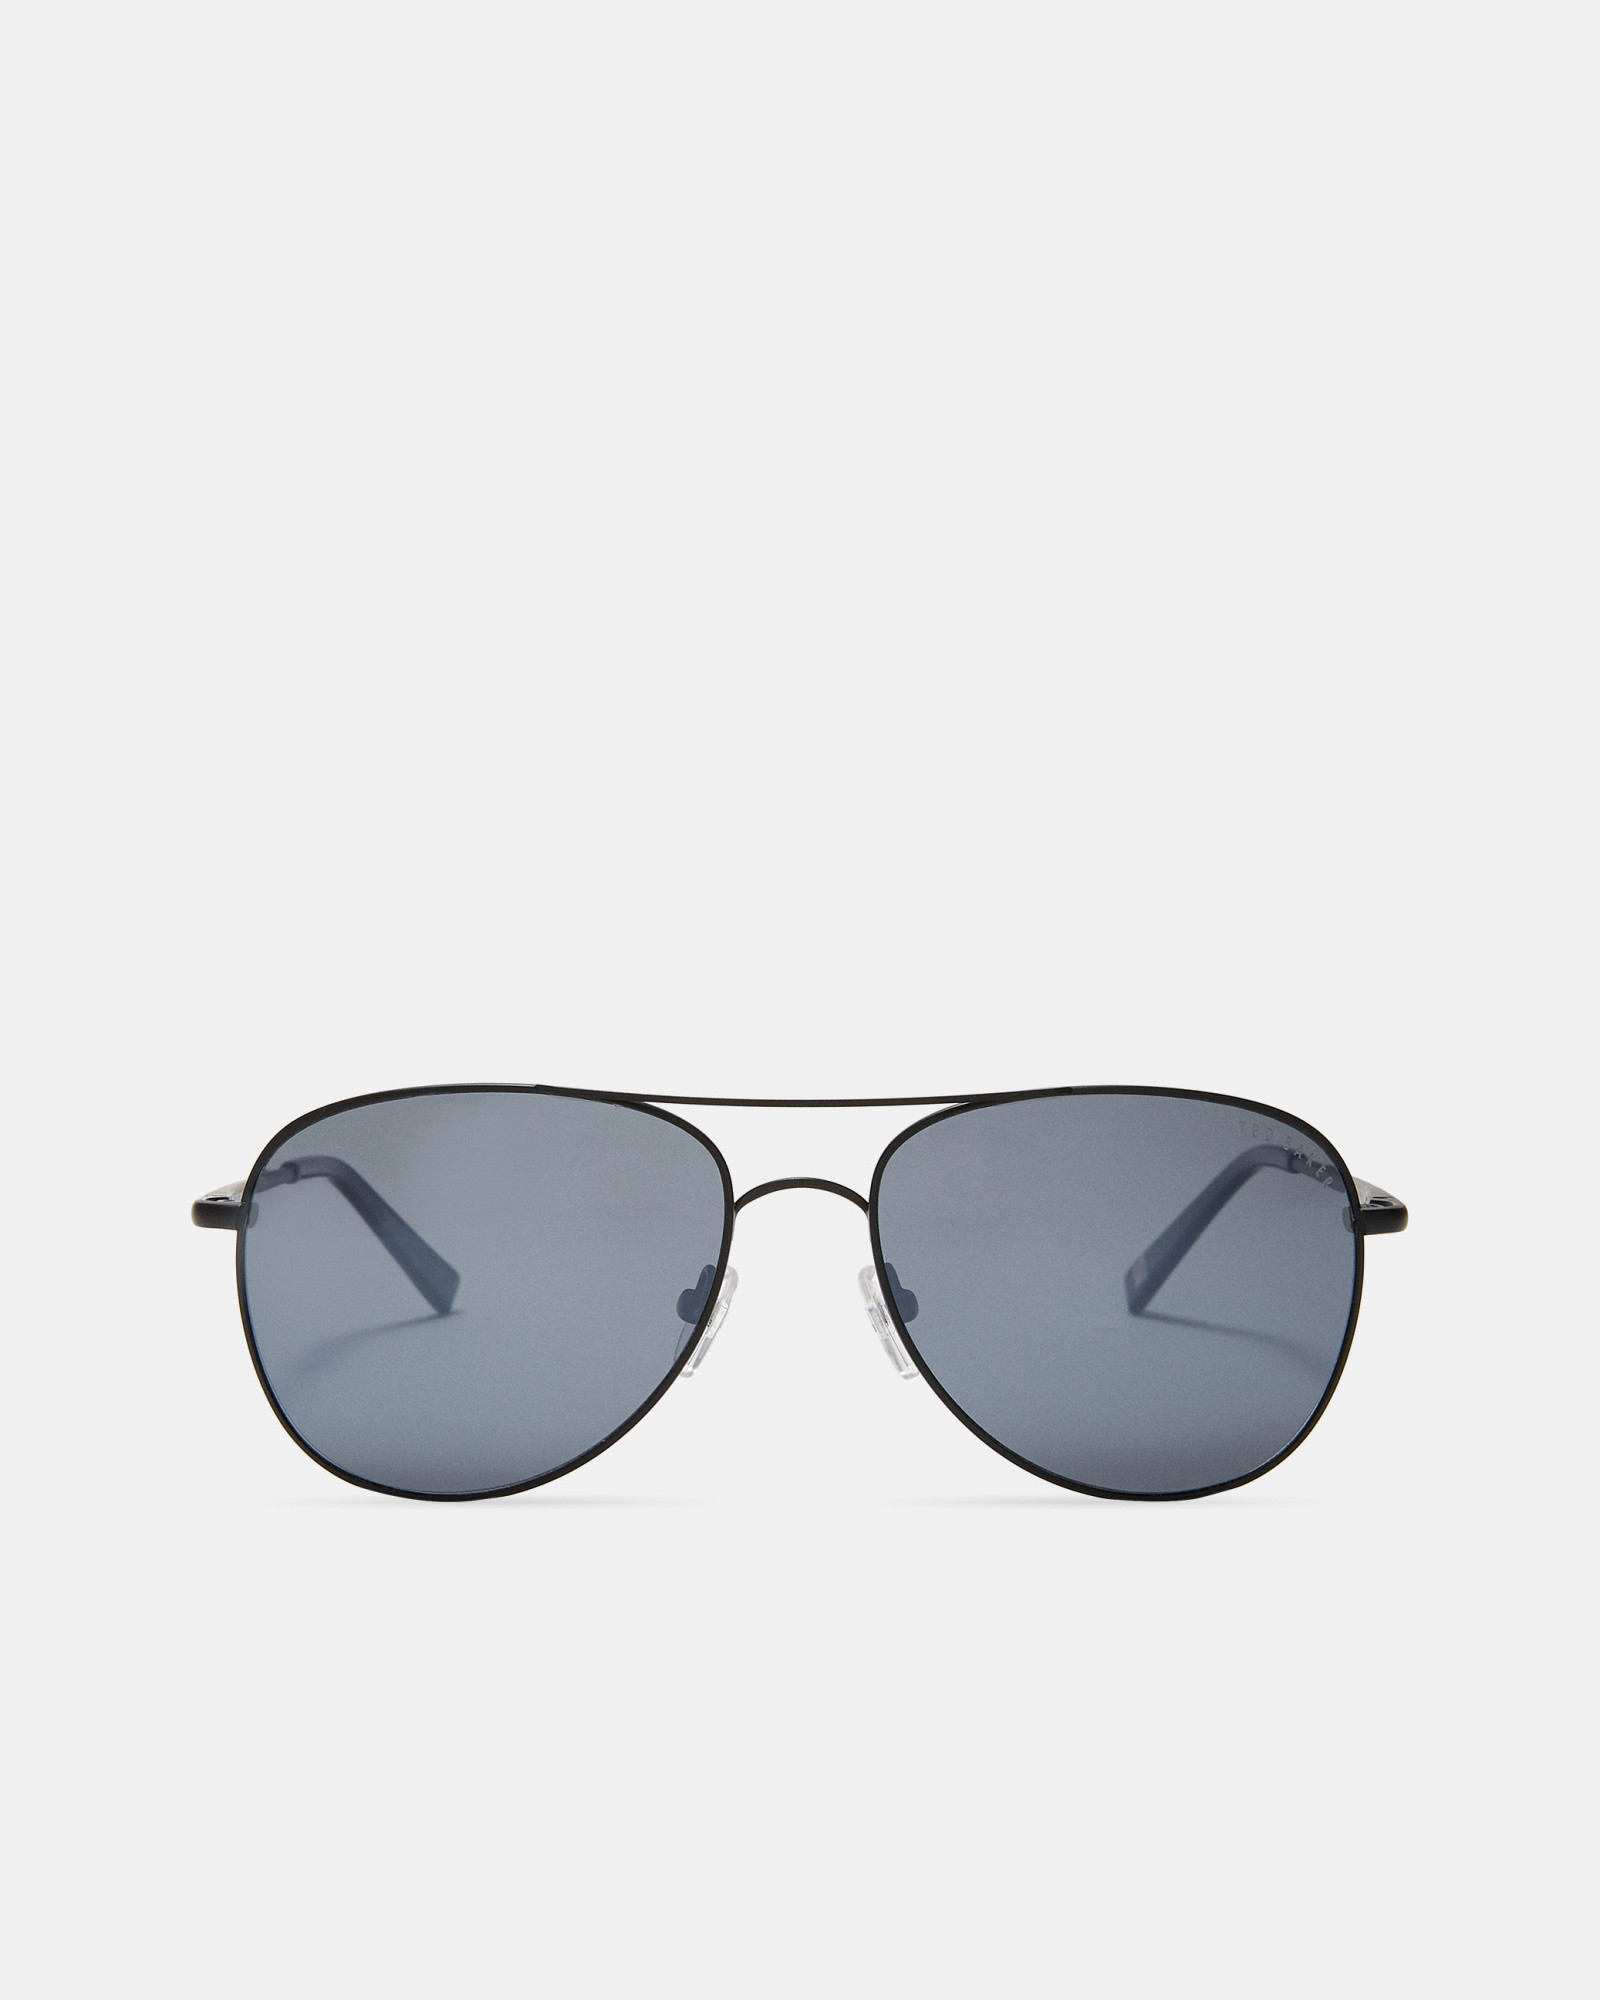 THINNS Classic aviator sunglasses